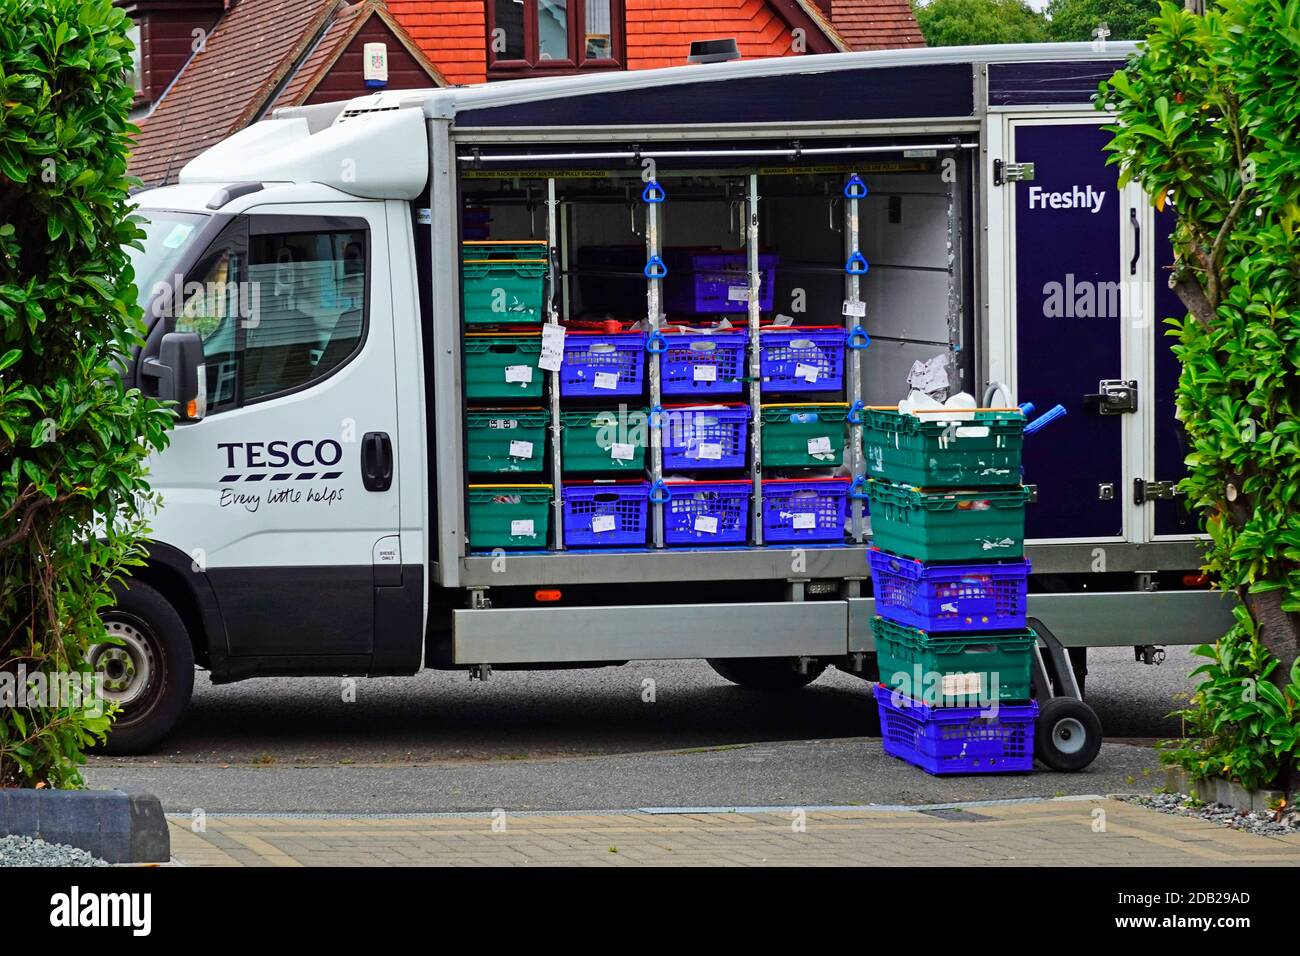 Nahaufnahme von geparkten offenen Seite Tesco Supermarkt Lebensmittelgeschäft van Essen Online-Shopping nach Hause liefern zu Hause mit Schachteln Lebensmittel auf Trolley England Großbritannien Stockfoto